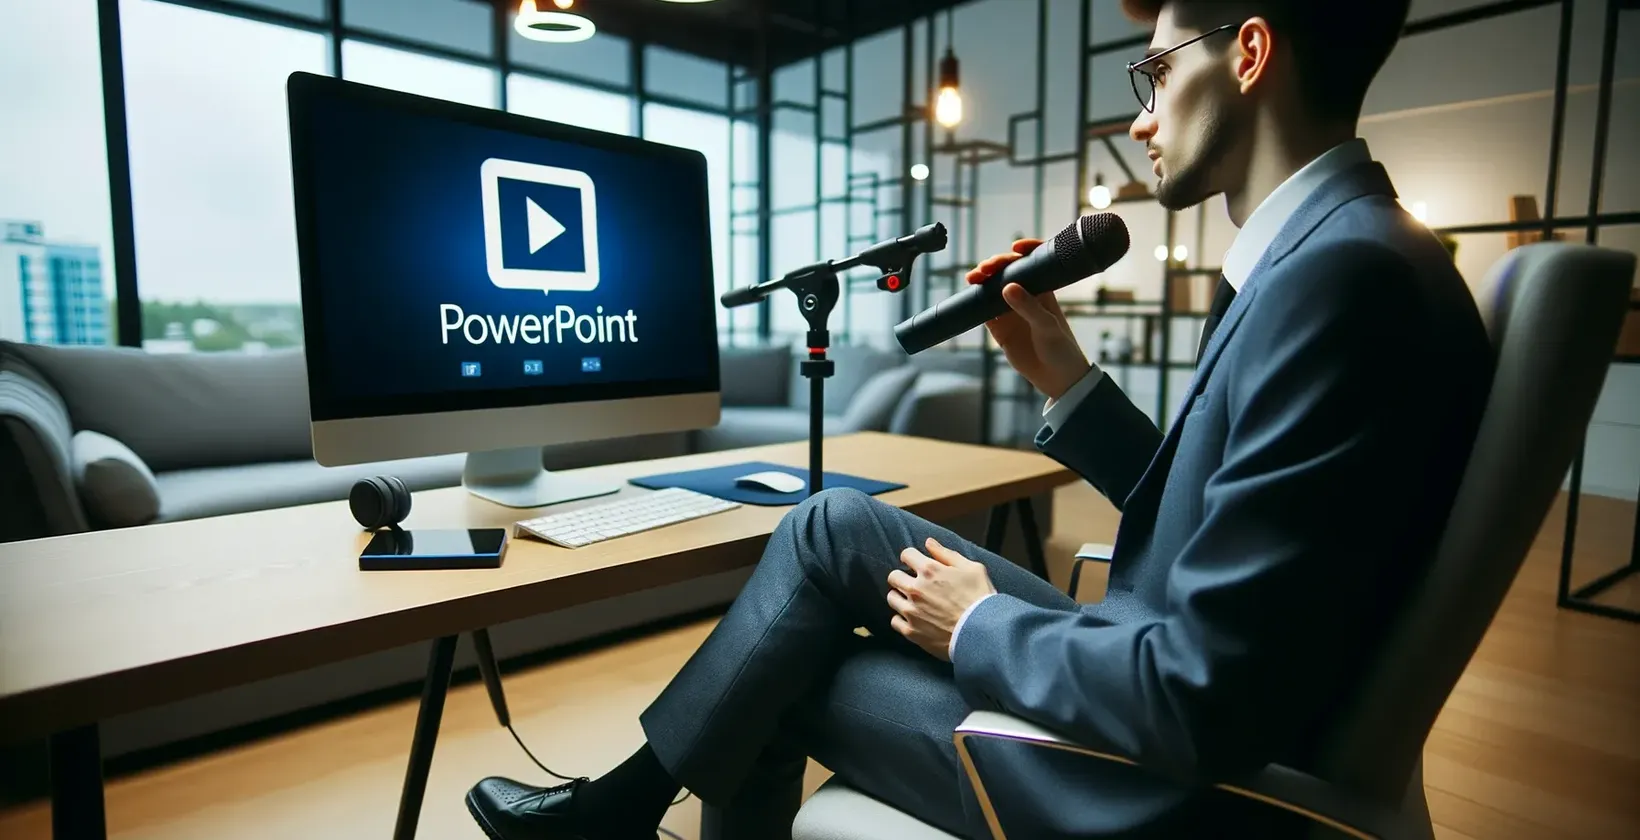 En man på ett kontor med mikrofon tittar på en bildskärm som visar logotypen PowerPoint.